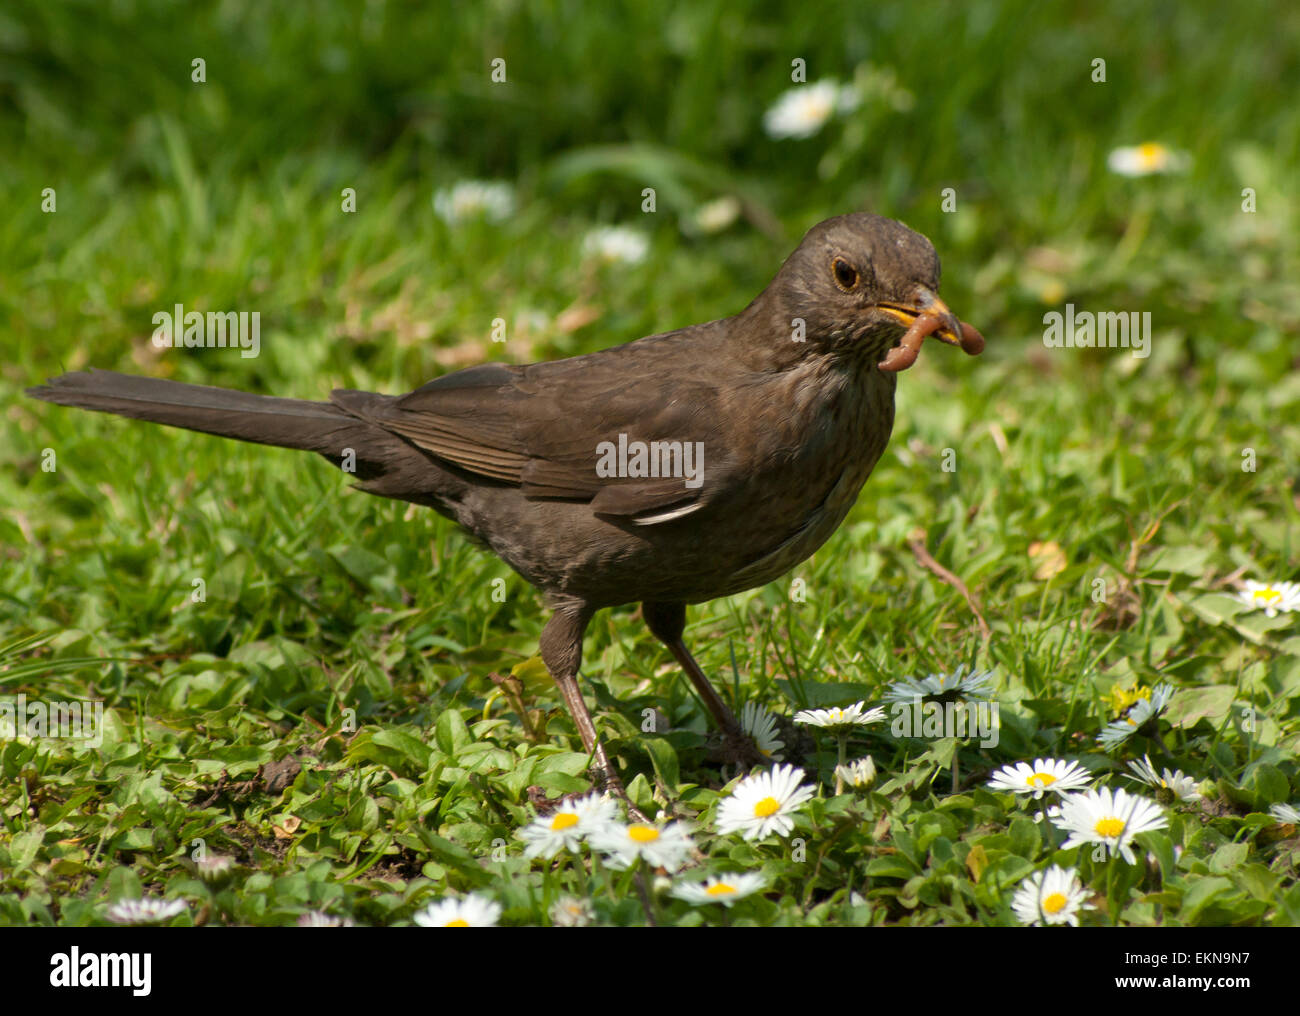 Bird(FEMMINA) Blackbird passeggiate attraverso un prato di fiori con margherite.(Bellis)raccoglie cibo.insetti.europa.Ucraina.Lviv. Foto Stock